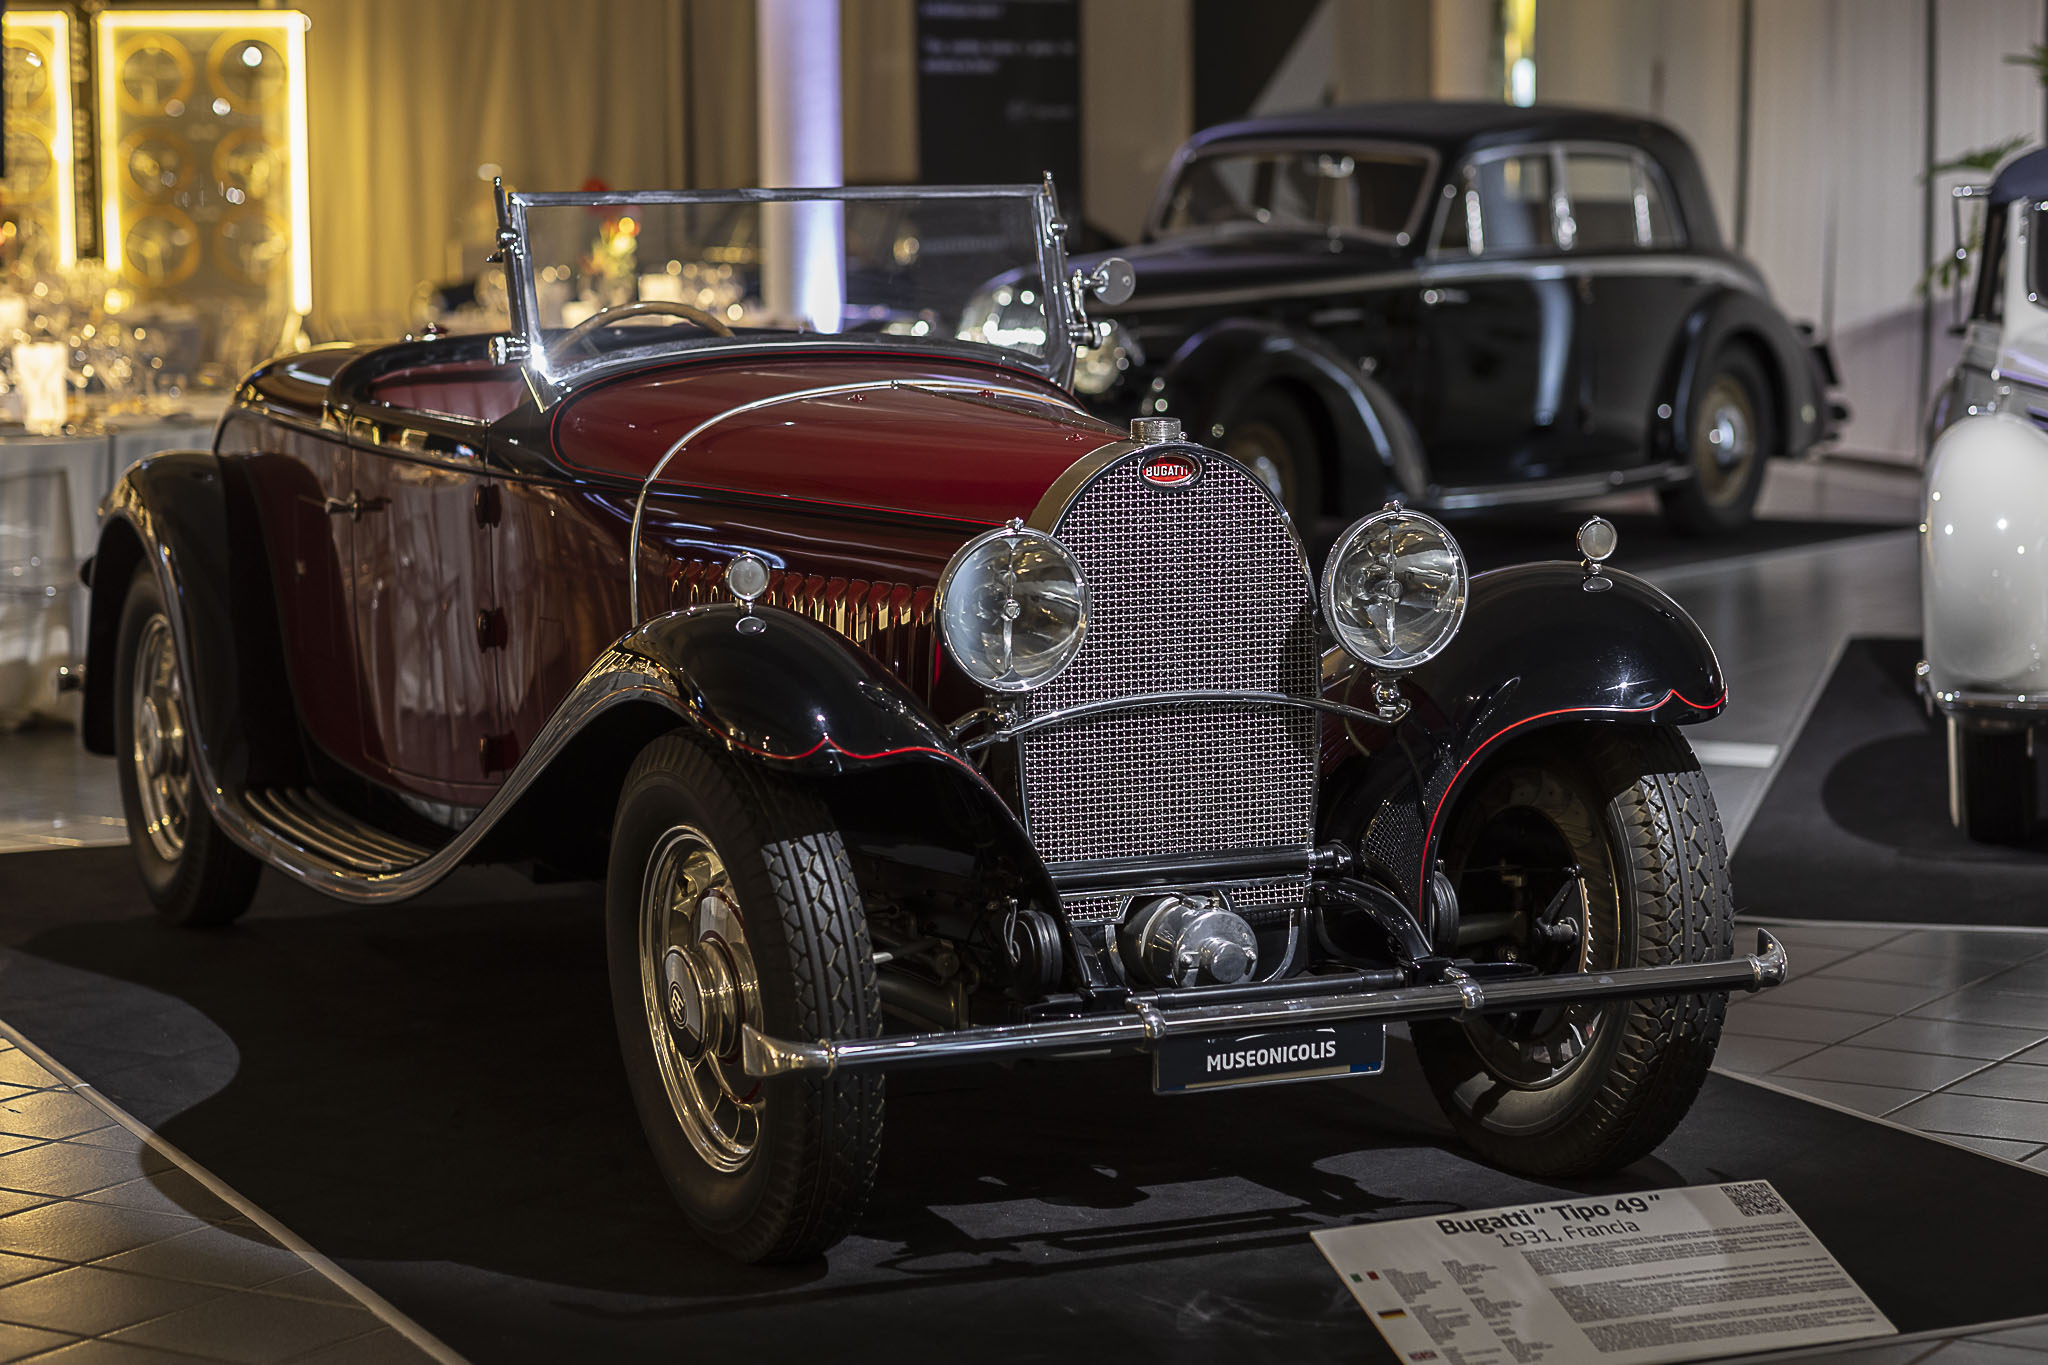 Museo Nicolis, Bugatti, ph Andrea Dal Prato